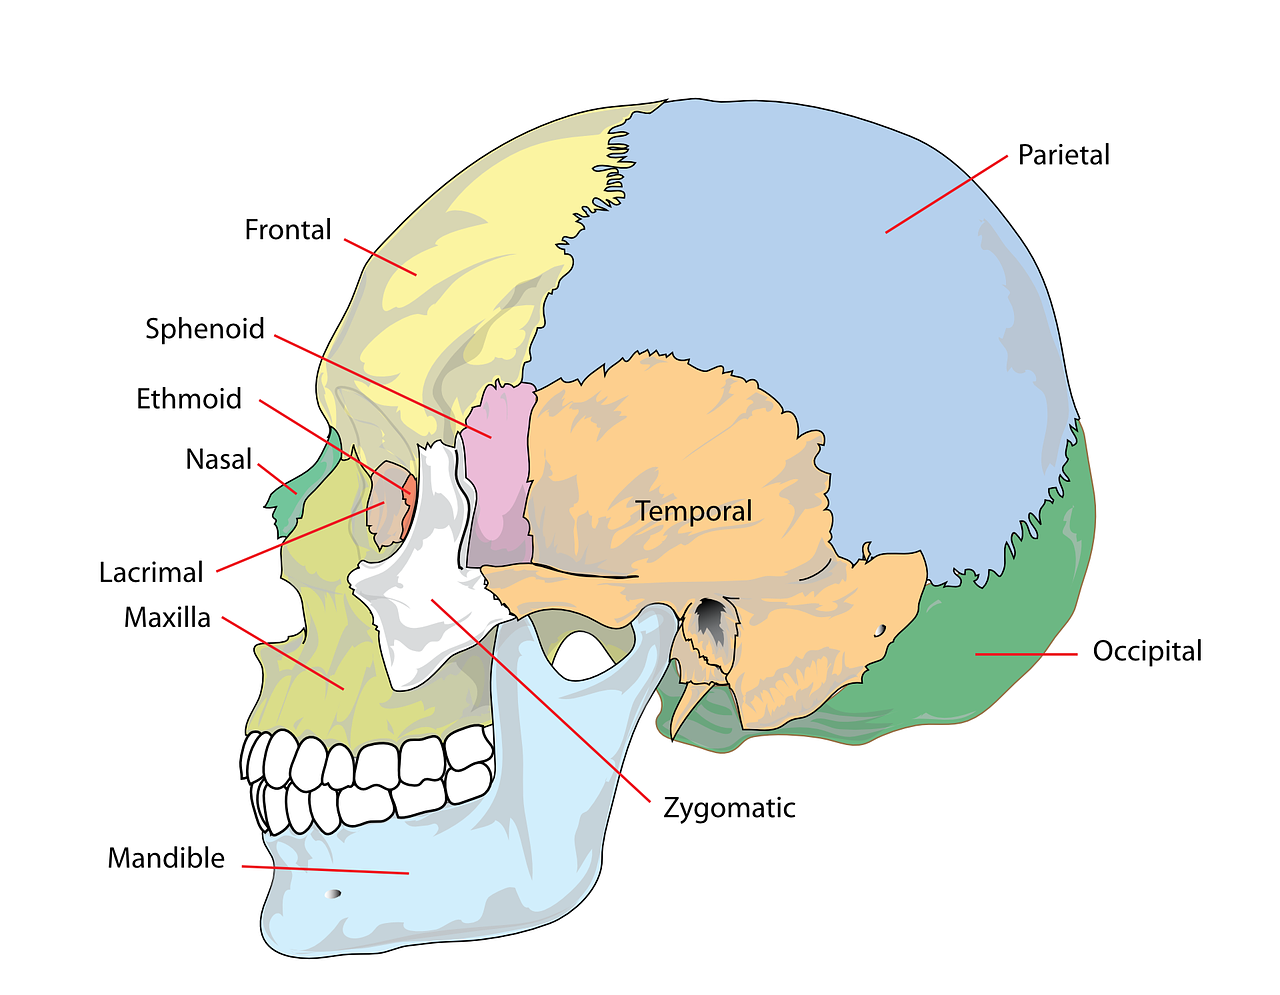 Kaukolė, Žmogus, Galva, Galvos Smegenys, Diagrama, Anatomija, Skeletas, Žandikaulis, Paženklinta Etikete, Anatominis